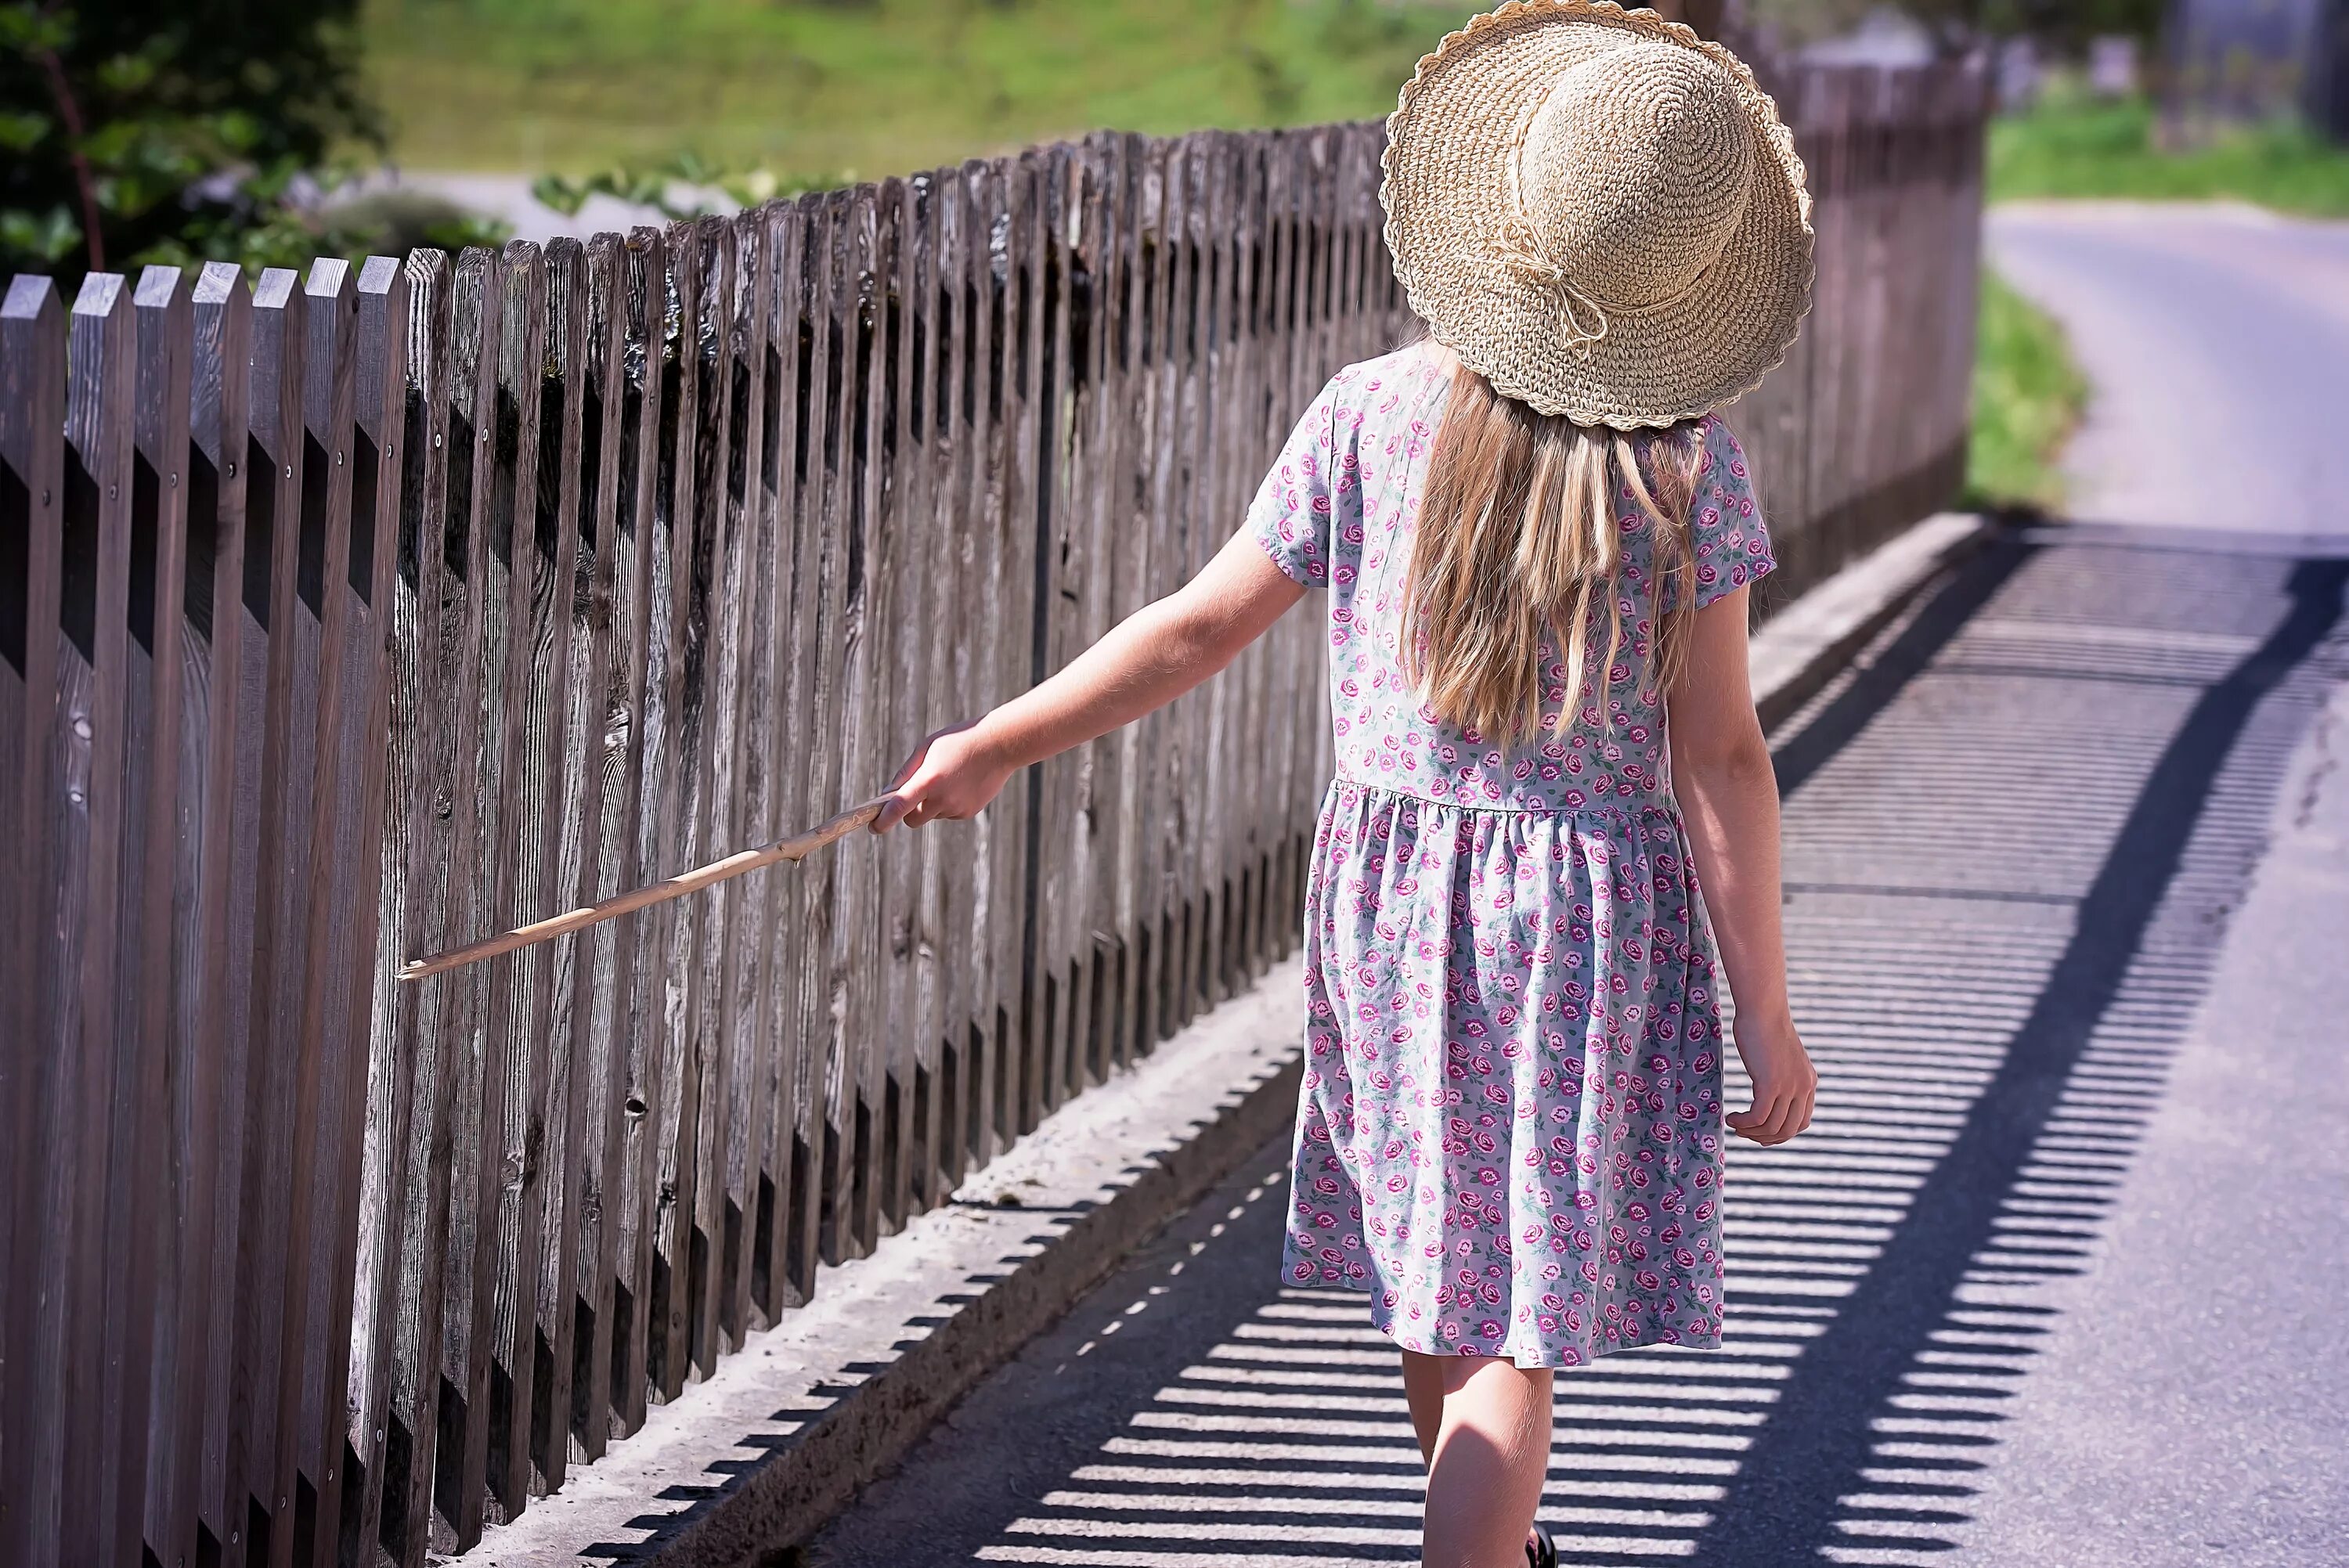 Human children. Забор для детей. Девочка за забором. Девочка на заборе. Девочка возле забора.